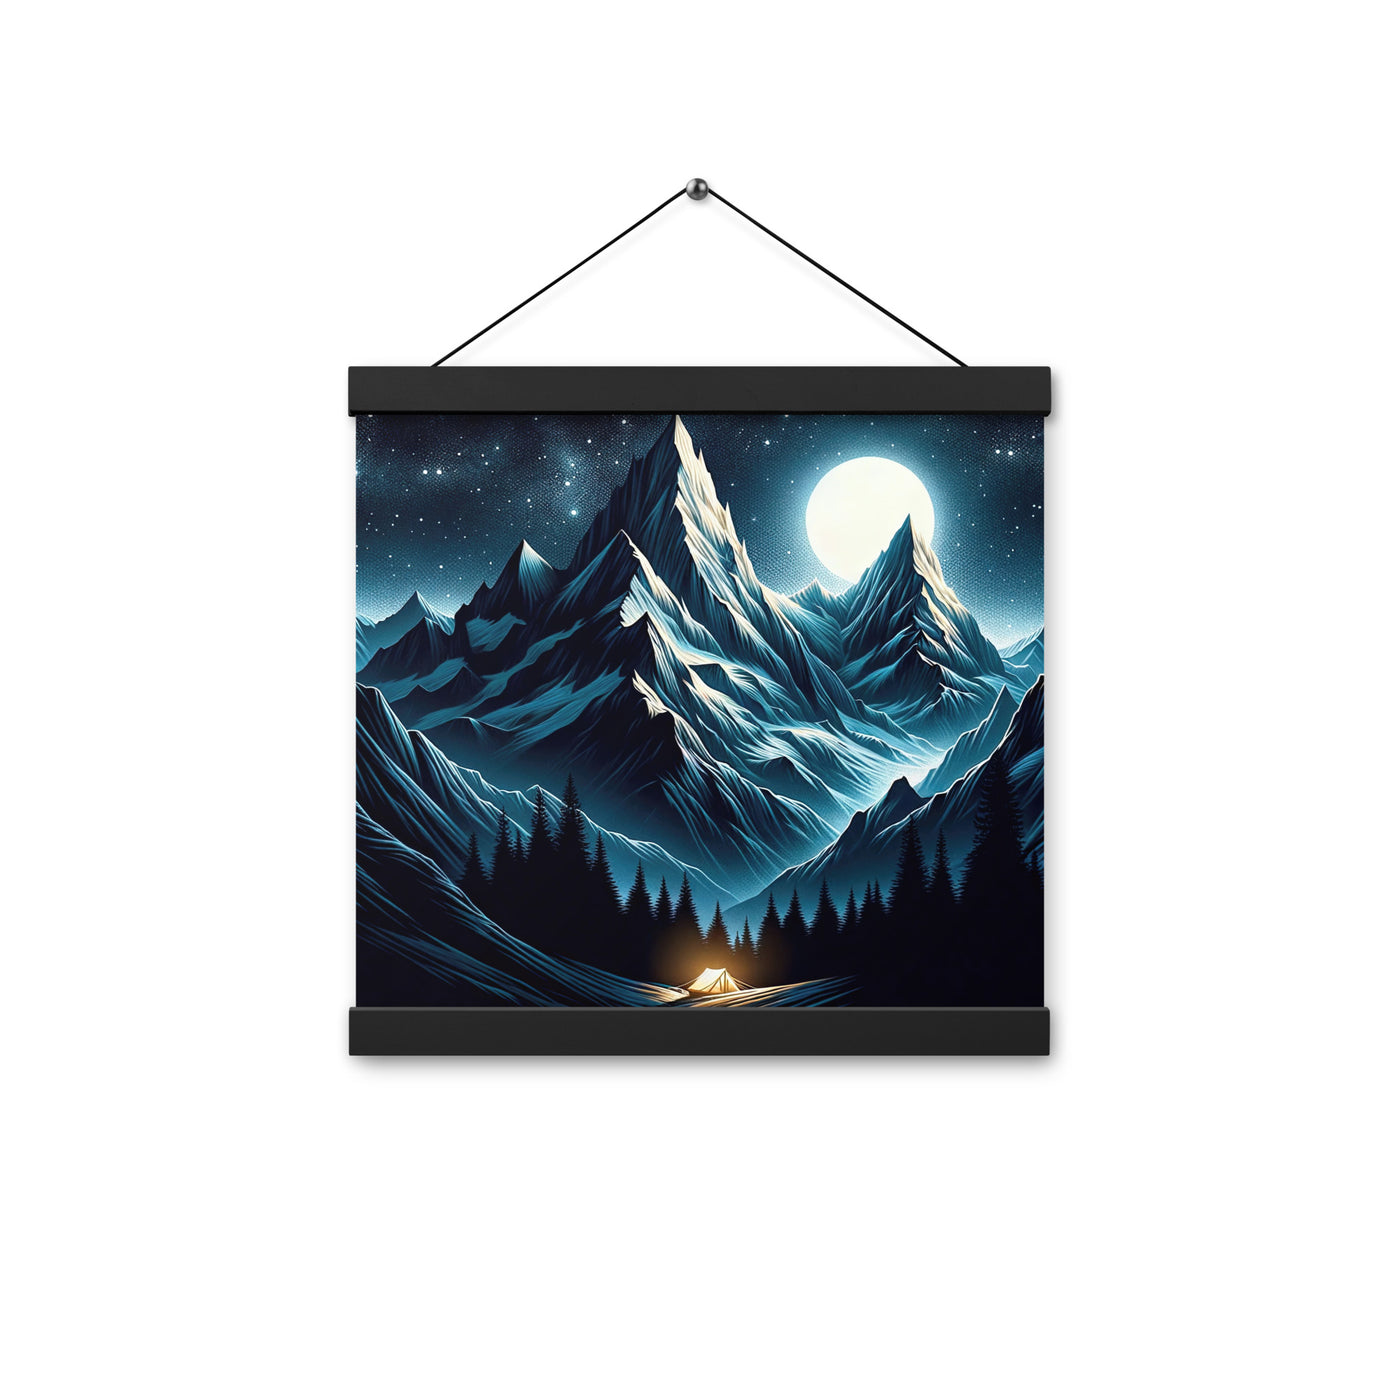 Alpennacht mit Zelt: Mondglanz auf Gipfeln und Tälern, sternenklarer Himmel - Premium Poster mit Aufhängung berge xxx yyy zzz 30.5 x 30.5 cm